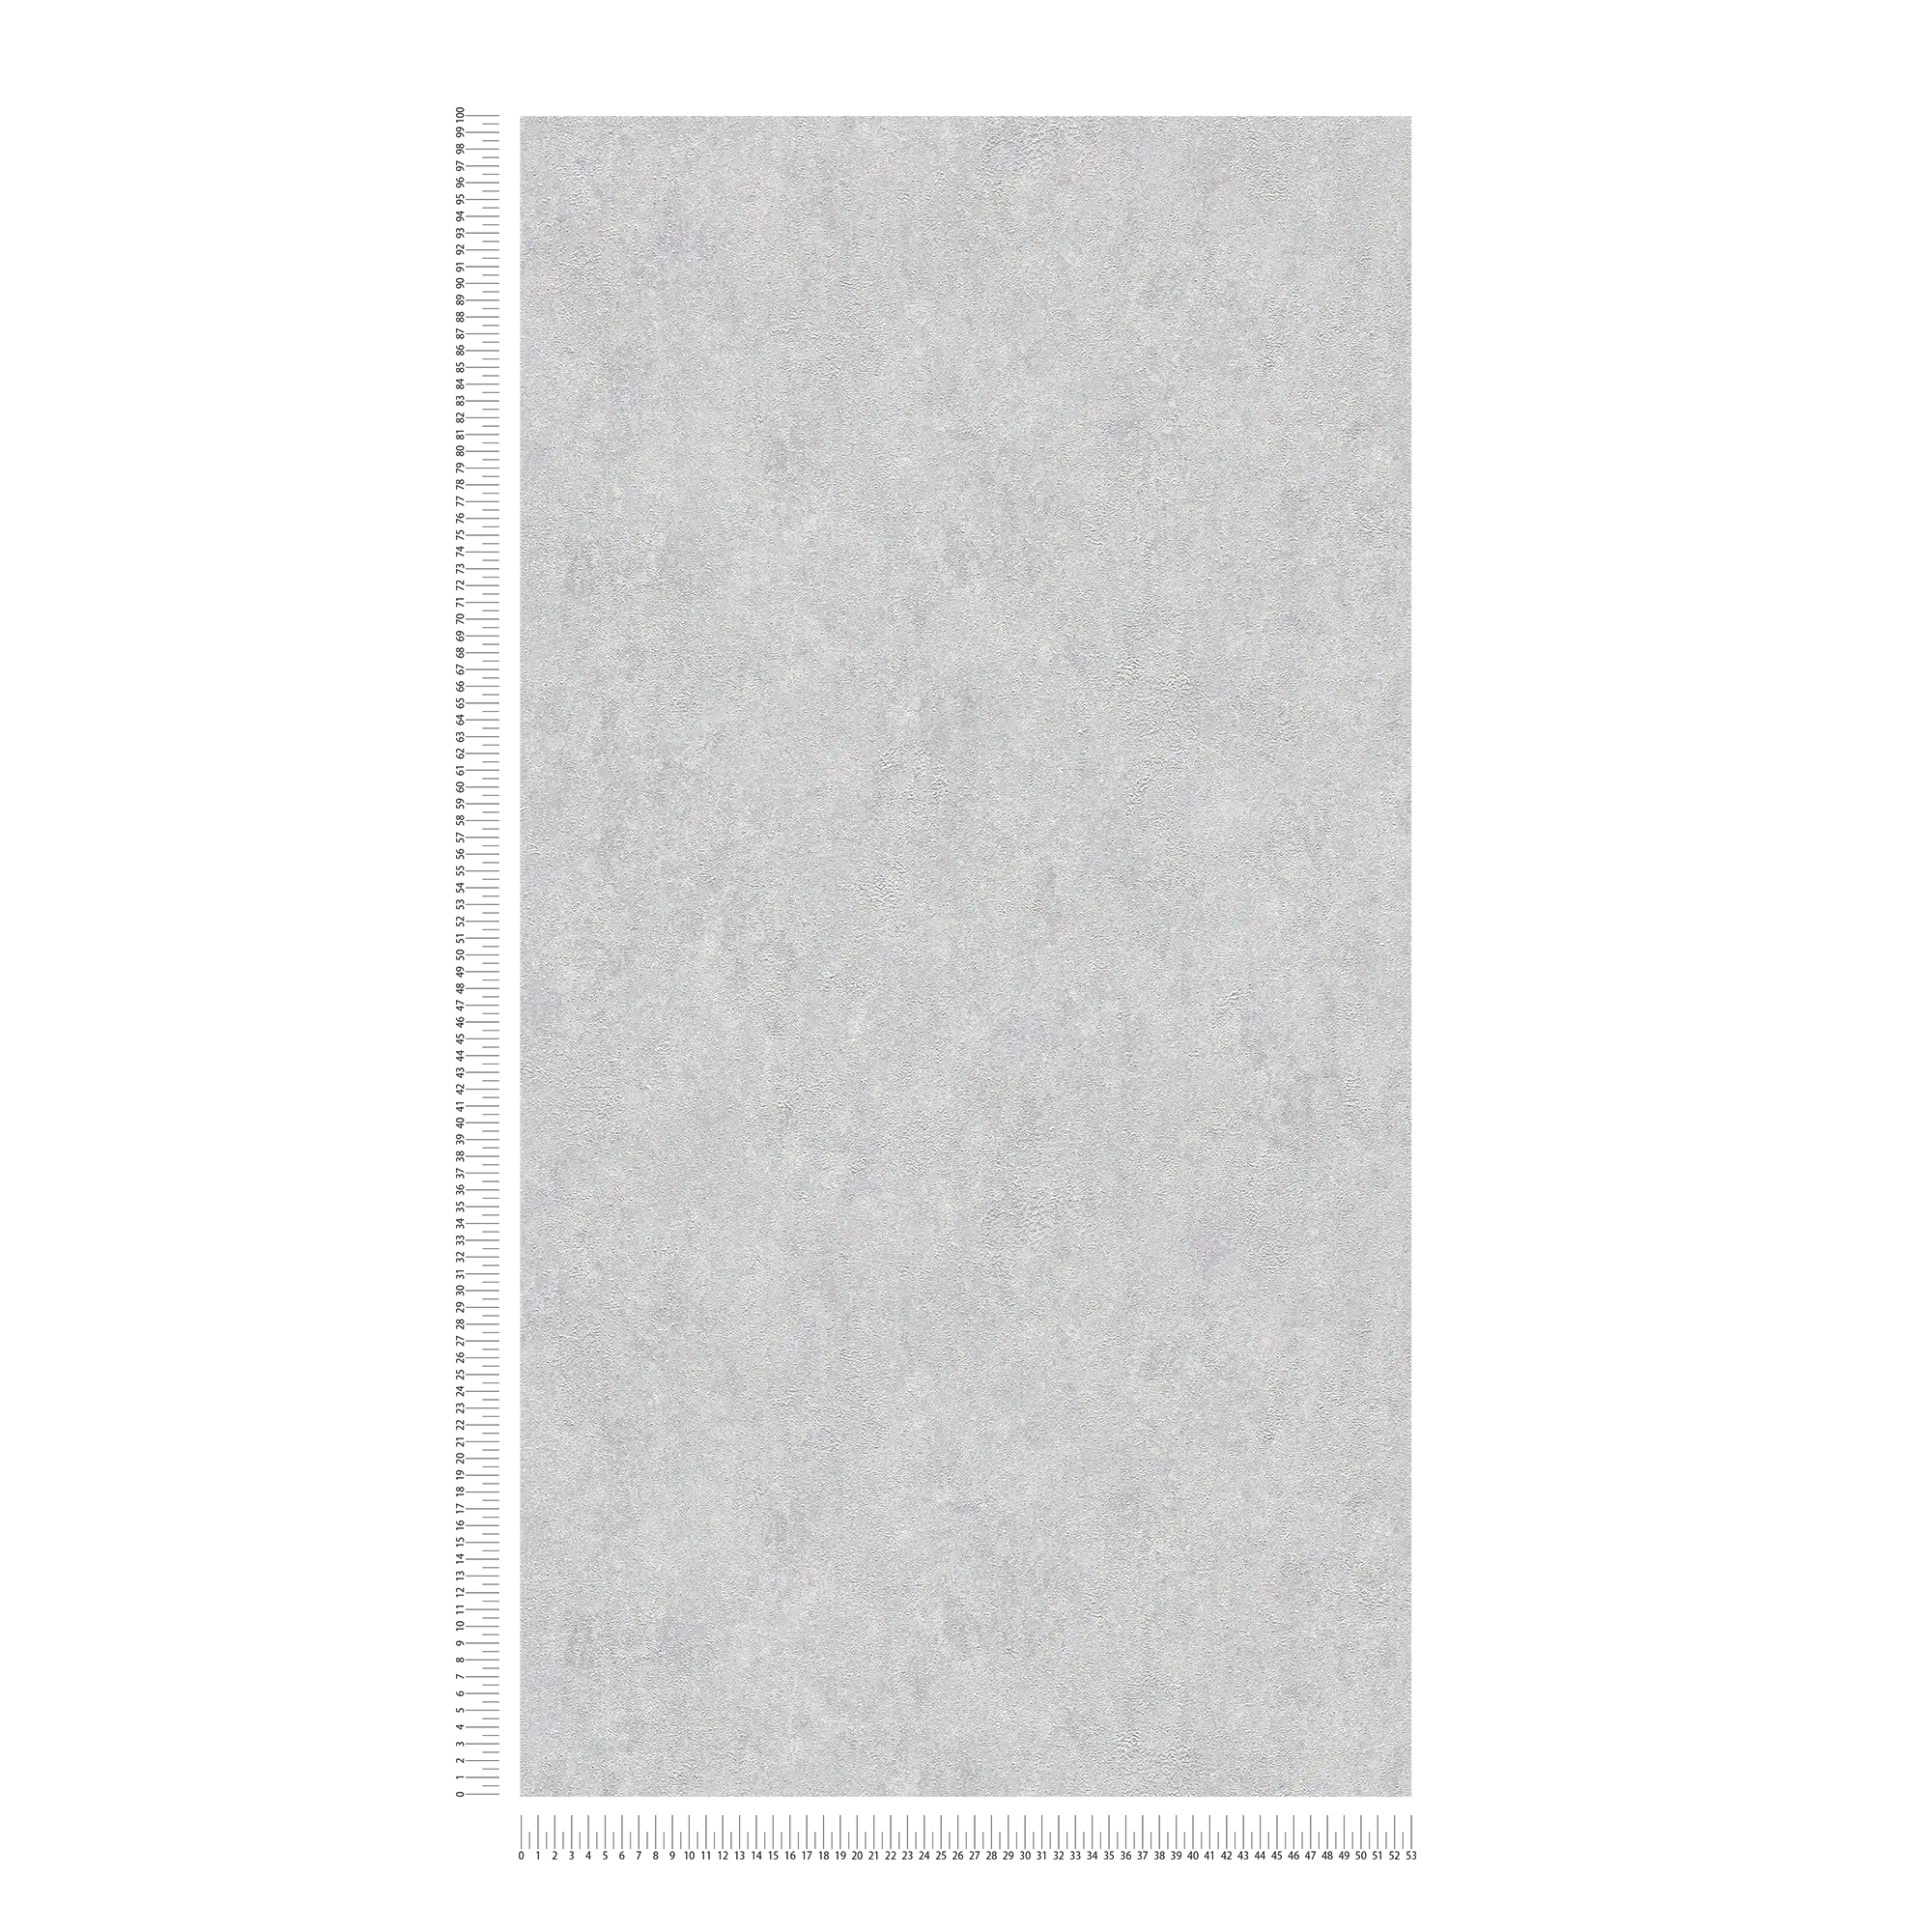             papier peint en papier structuré uni brillant avec effet métallisé - gris, argenté
        